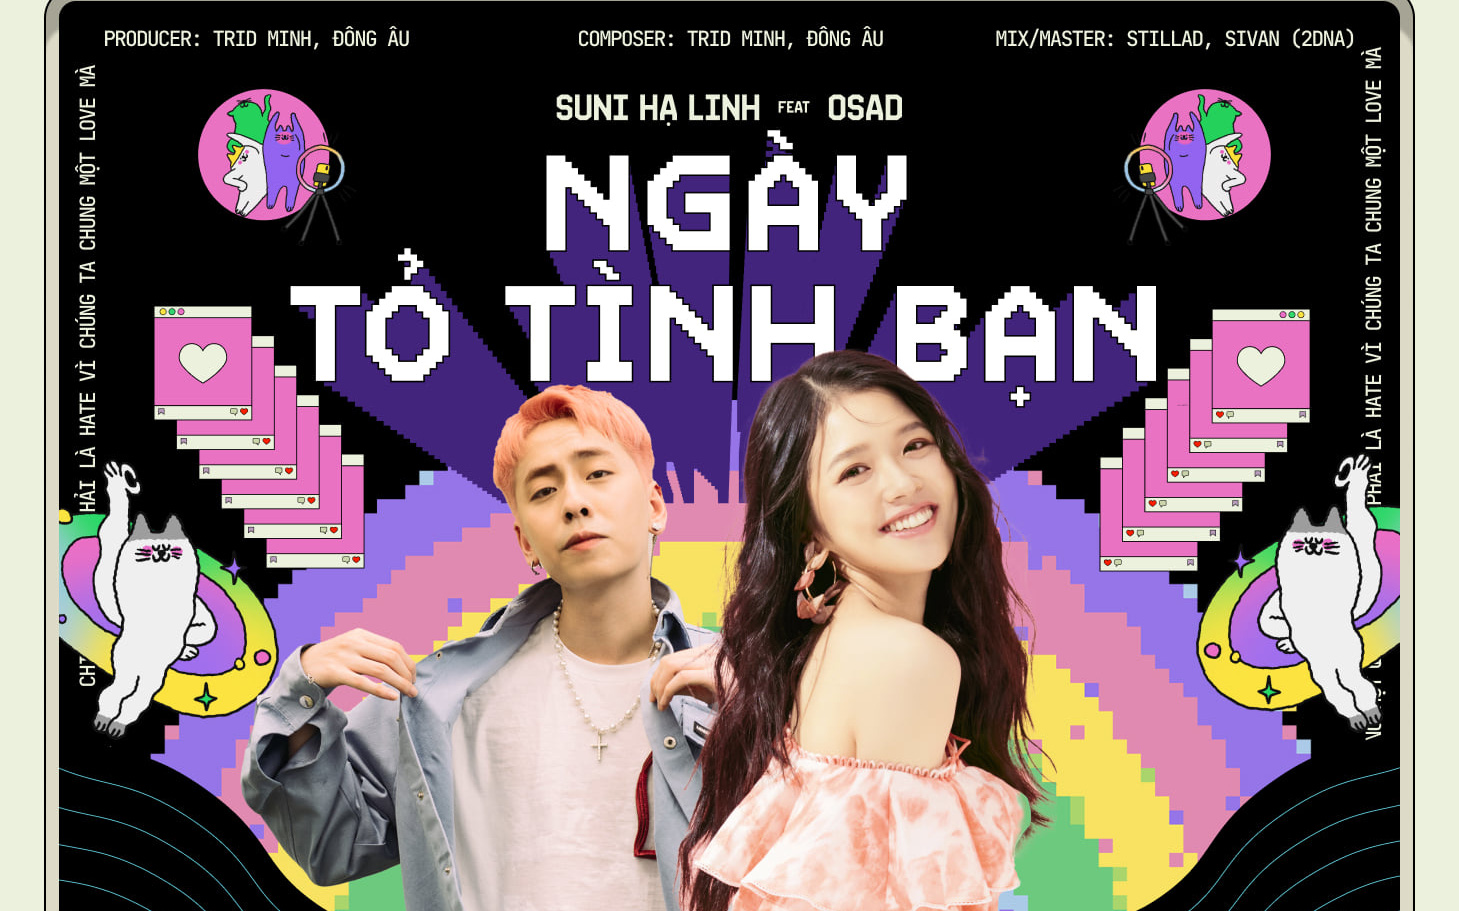 Suni Hạ Linh và OSAD hé lộ điệp khúc gây nghiện trong teaser Ngày Tỏ Tình Bạn, Gen Z sắp có câu hát viral mới rồi?